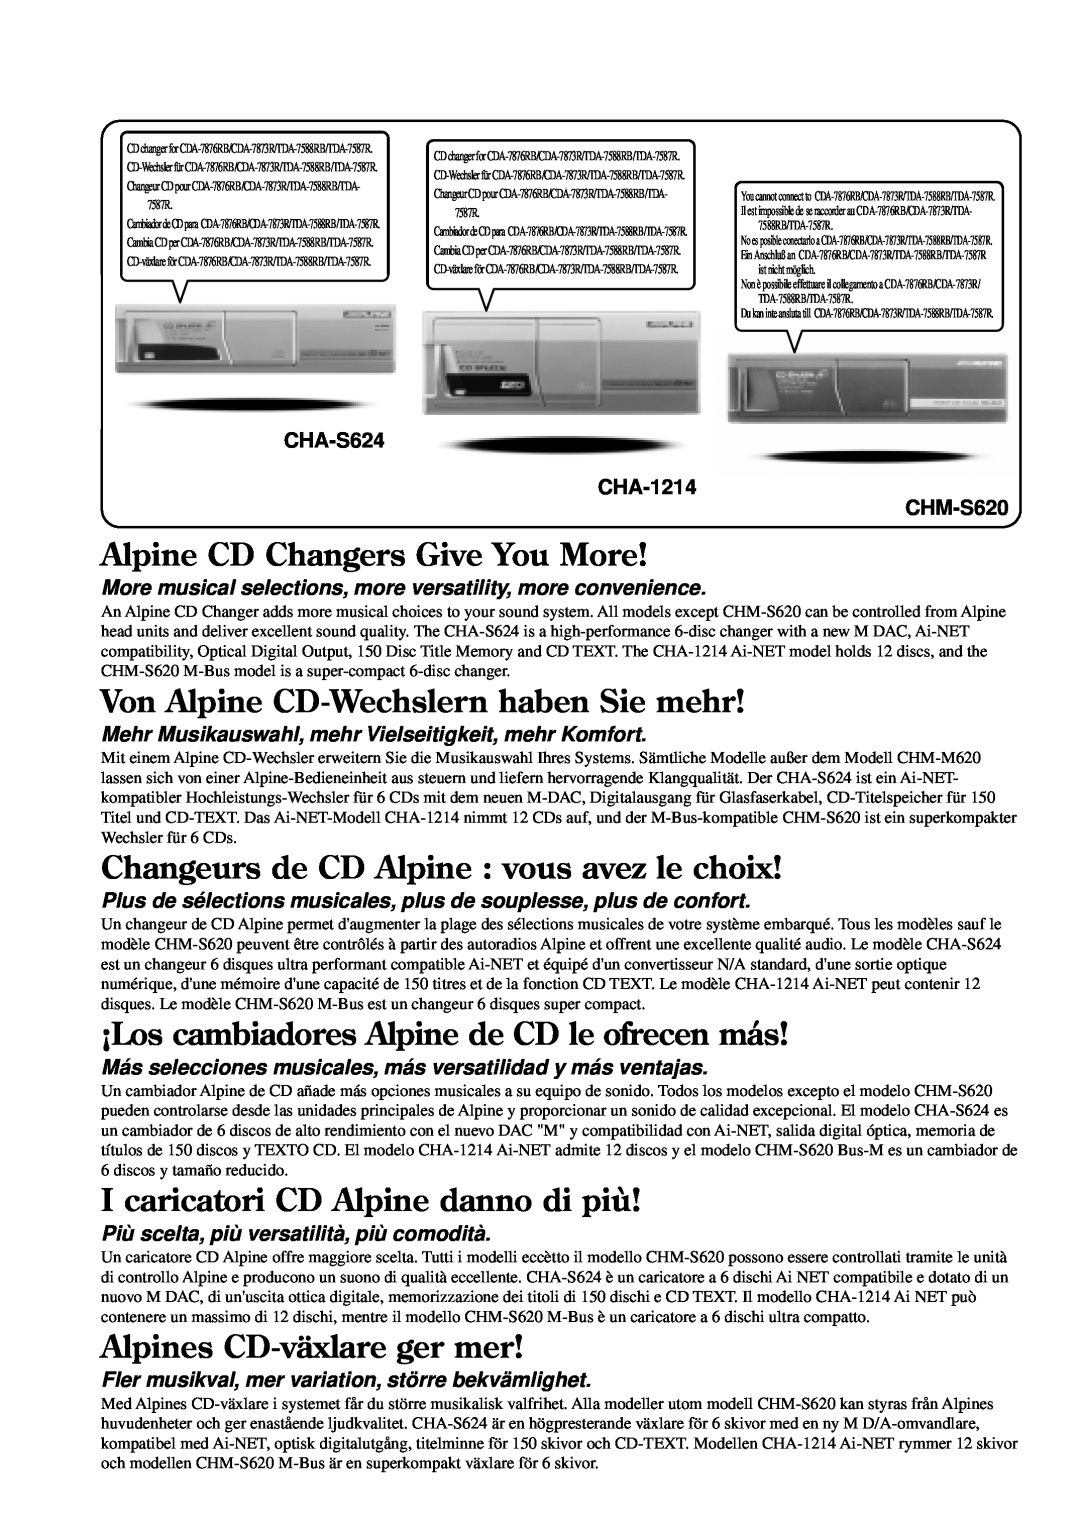 Alpine TDA-7588RB Alpine CD Changers Give You More, Von Alpine CD-Wechslernhaben Sie mehr, Alpines CD-växlareger mer 